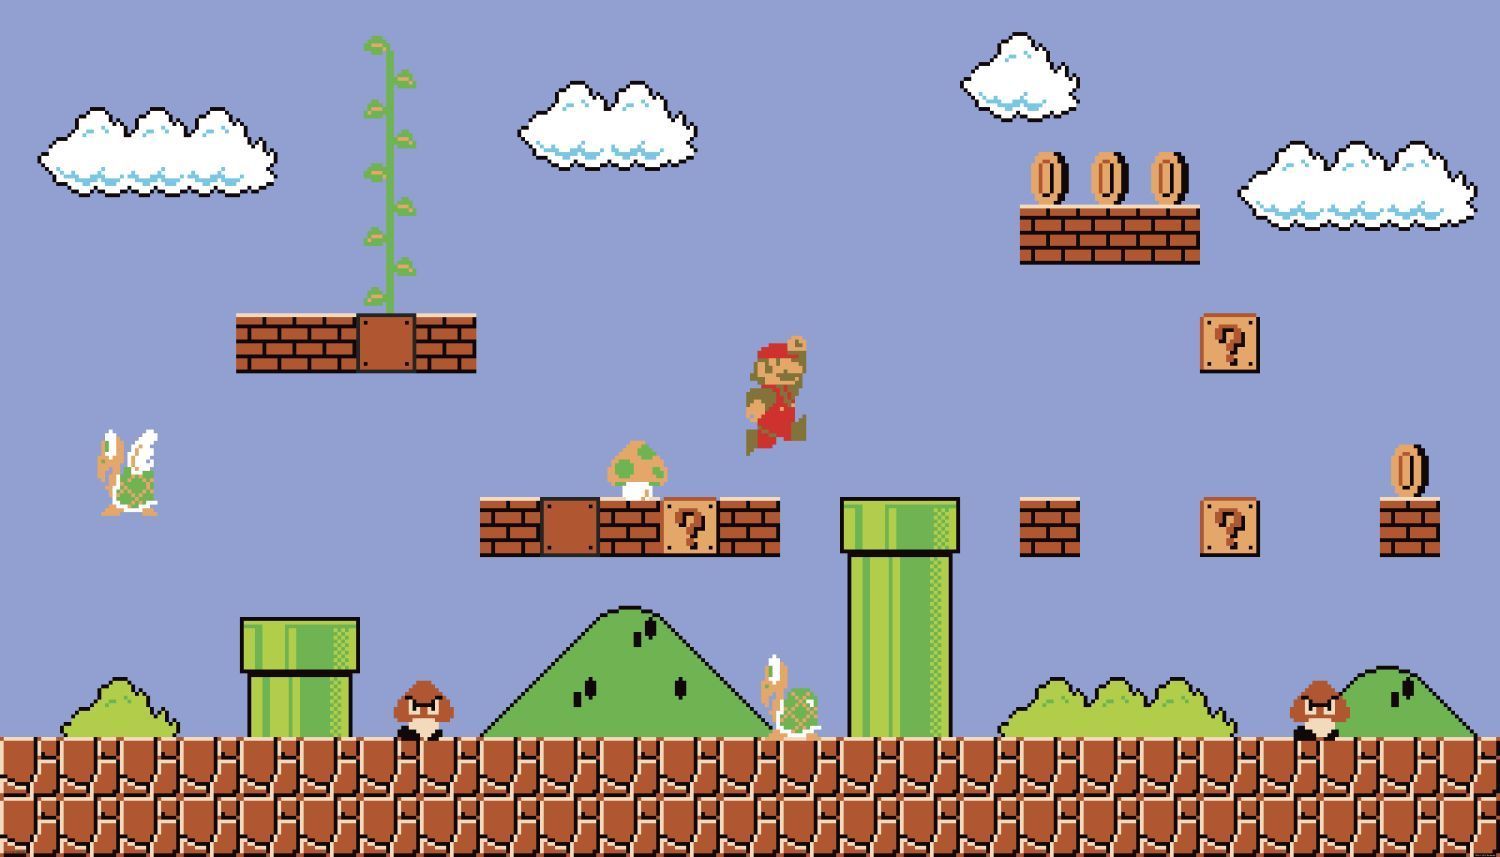 The game super mario bros in pixel art - Super Mario